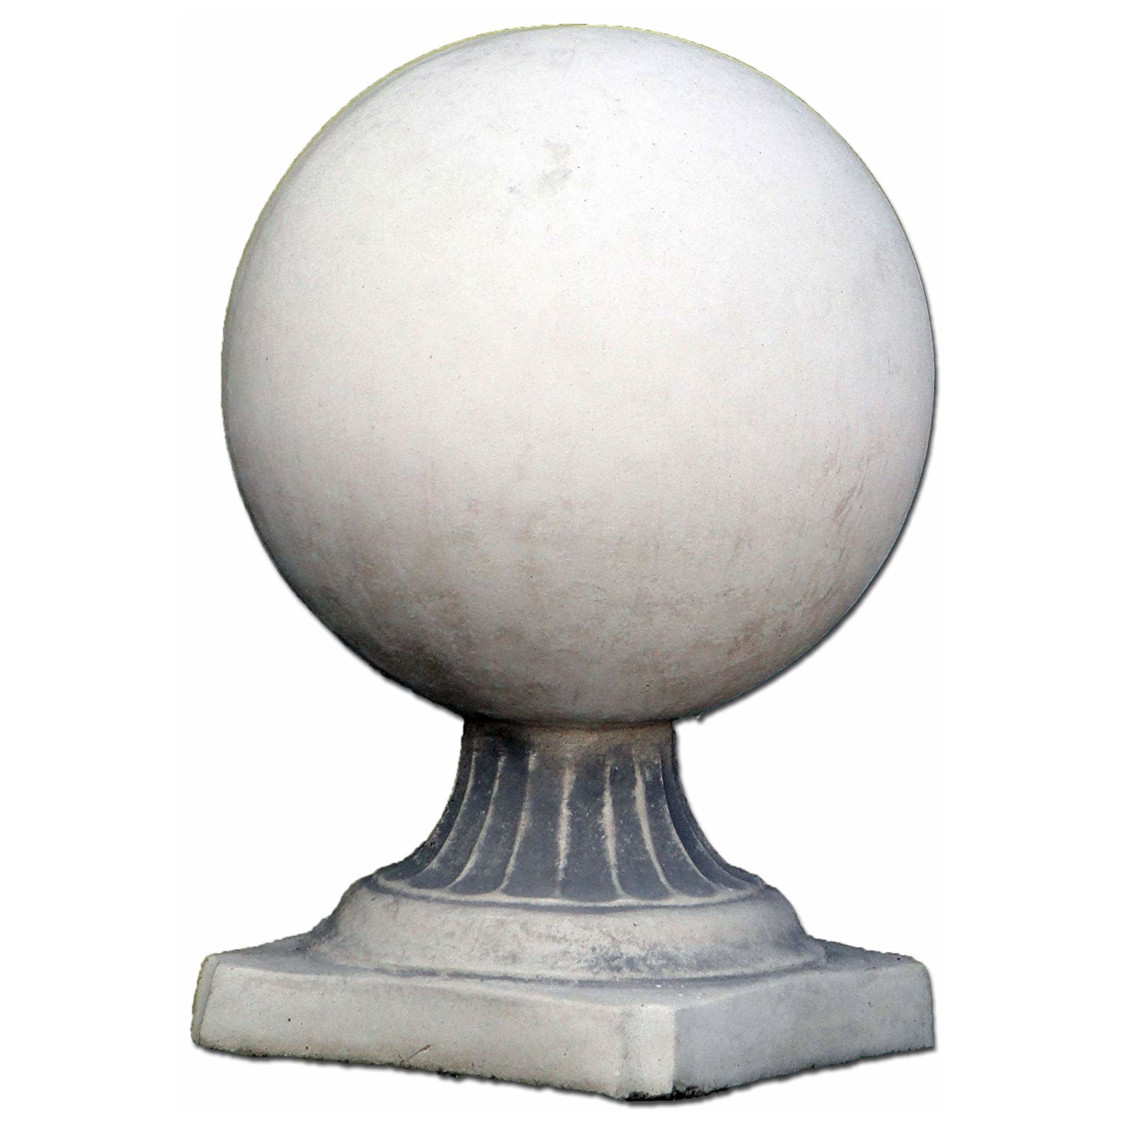 Бетонный шар весит. Шар бетонный на подставке. Бетонный шар на колонне. Бетонные шары для забора. Шар бетонный декоративный.